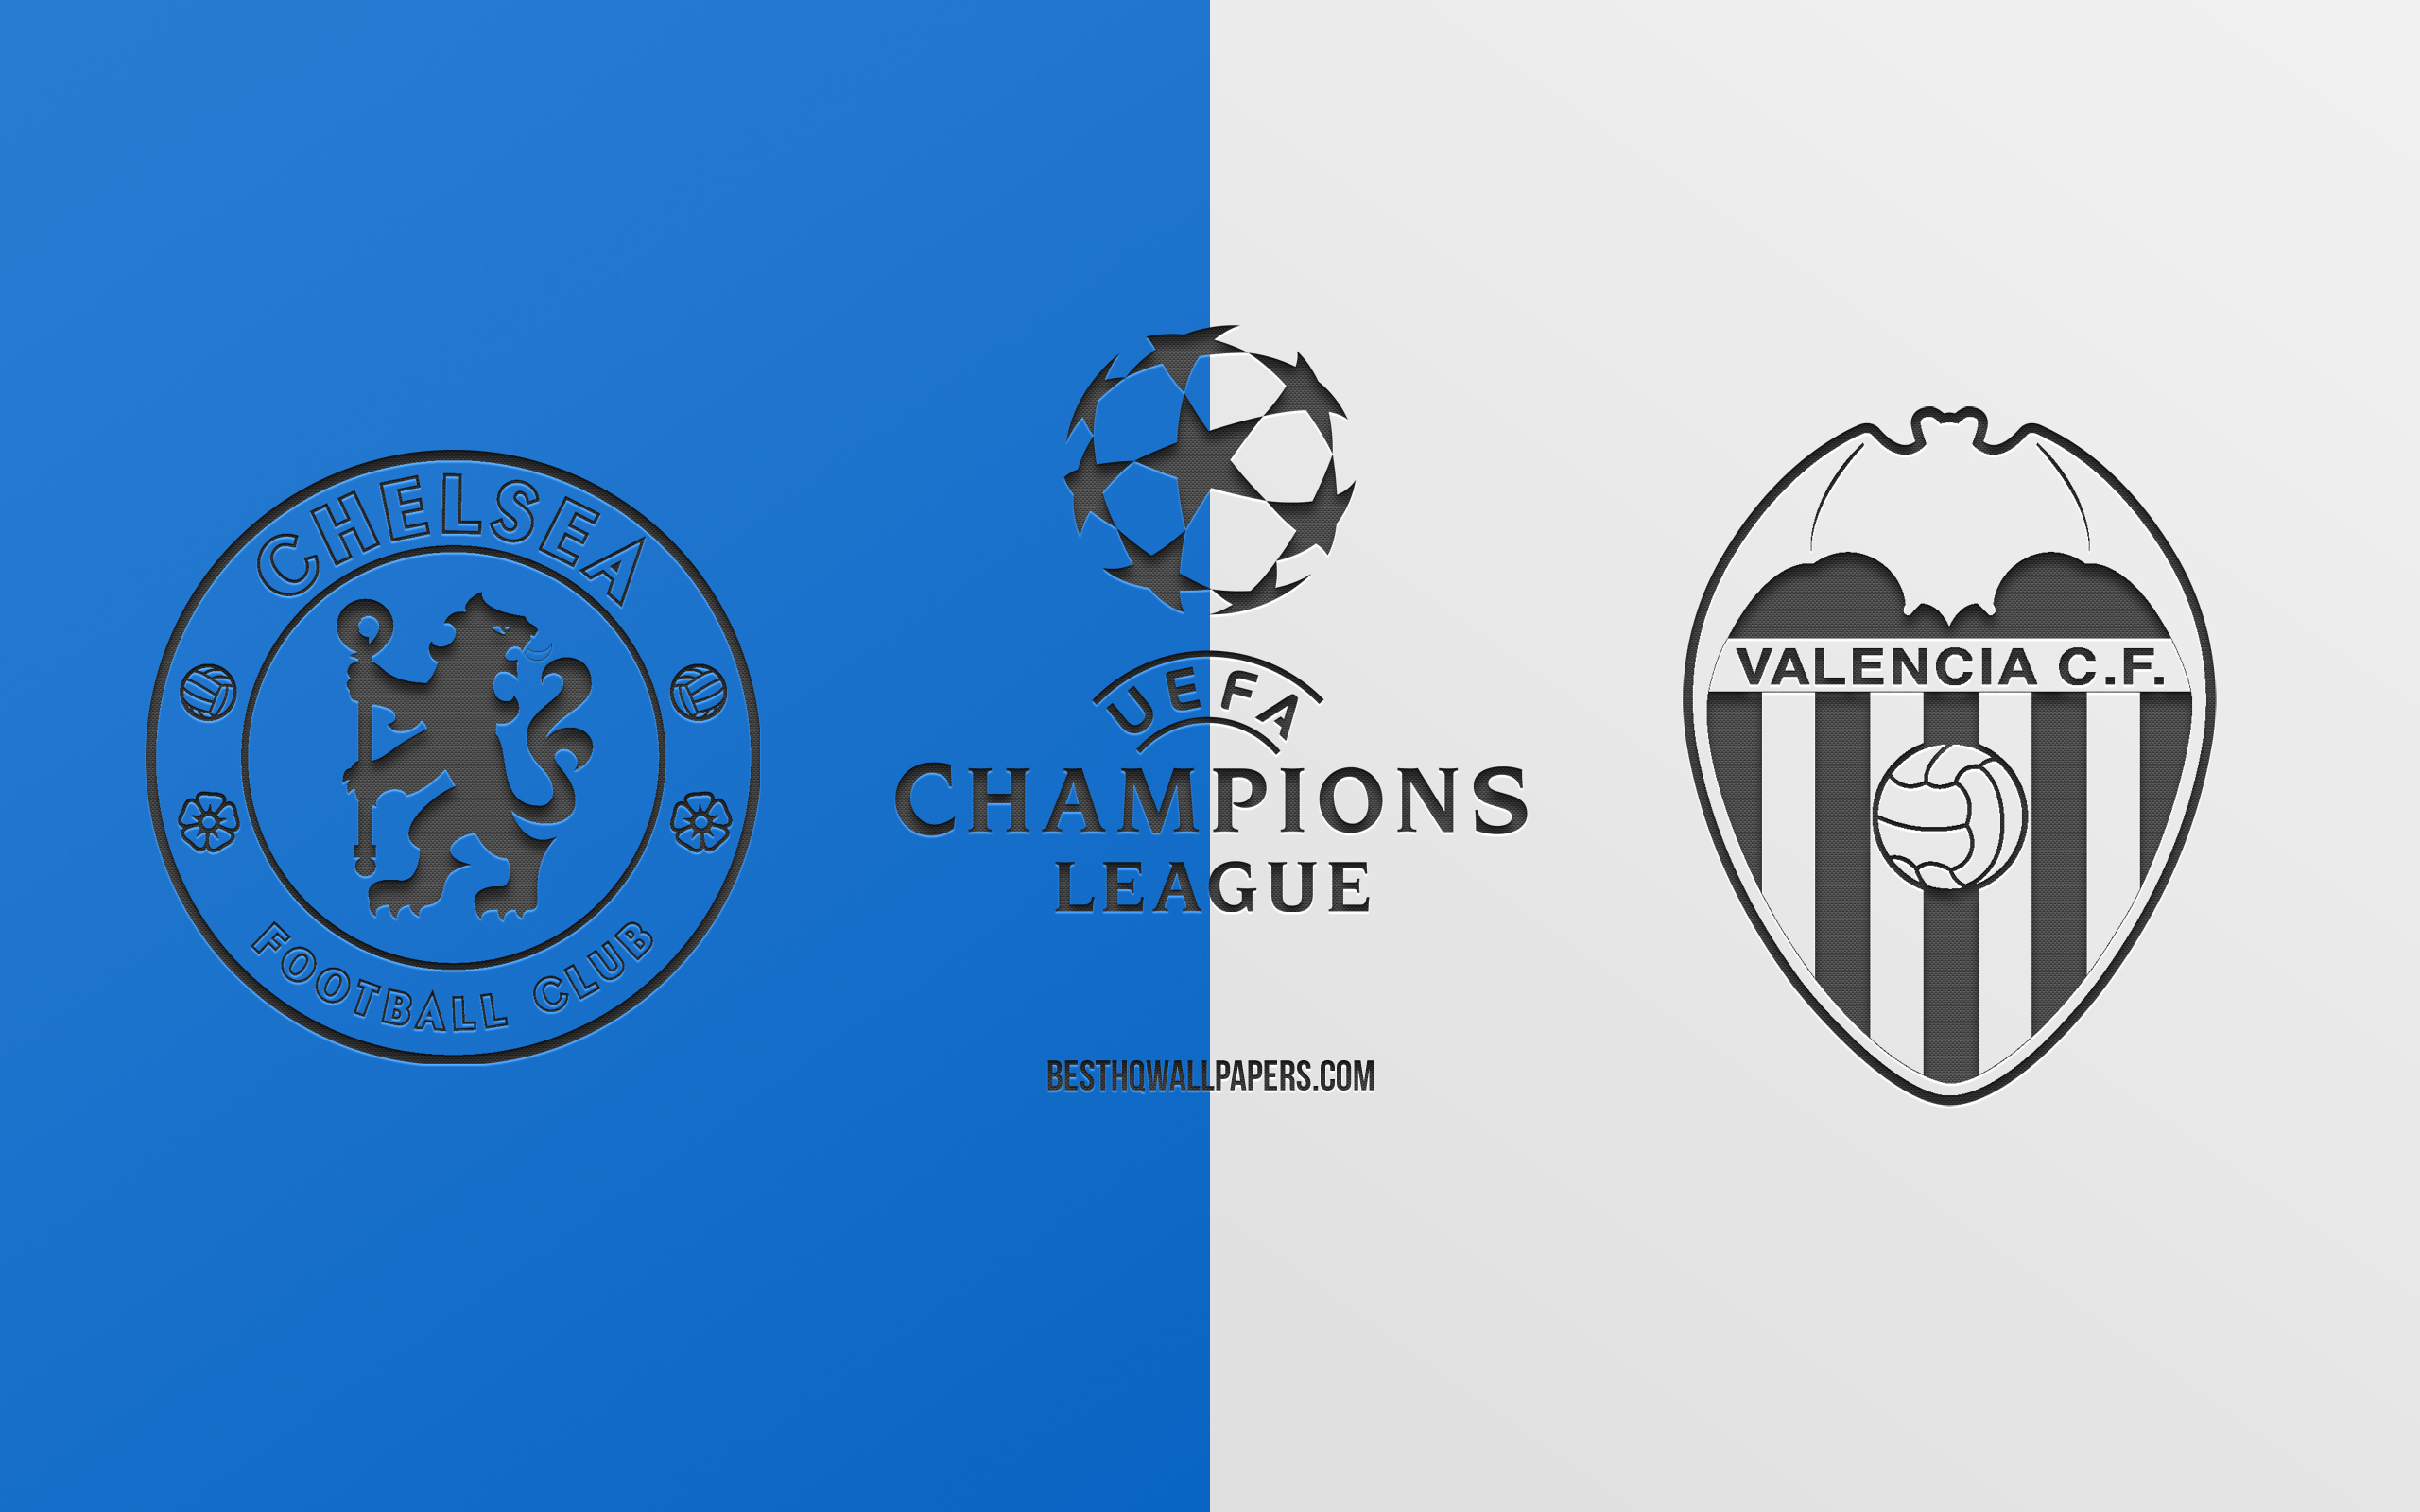 Chelsea Fc Vs Valencia Cf, Football Match, 2019 Champions - Emblem - HD Wallpaper 